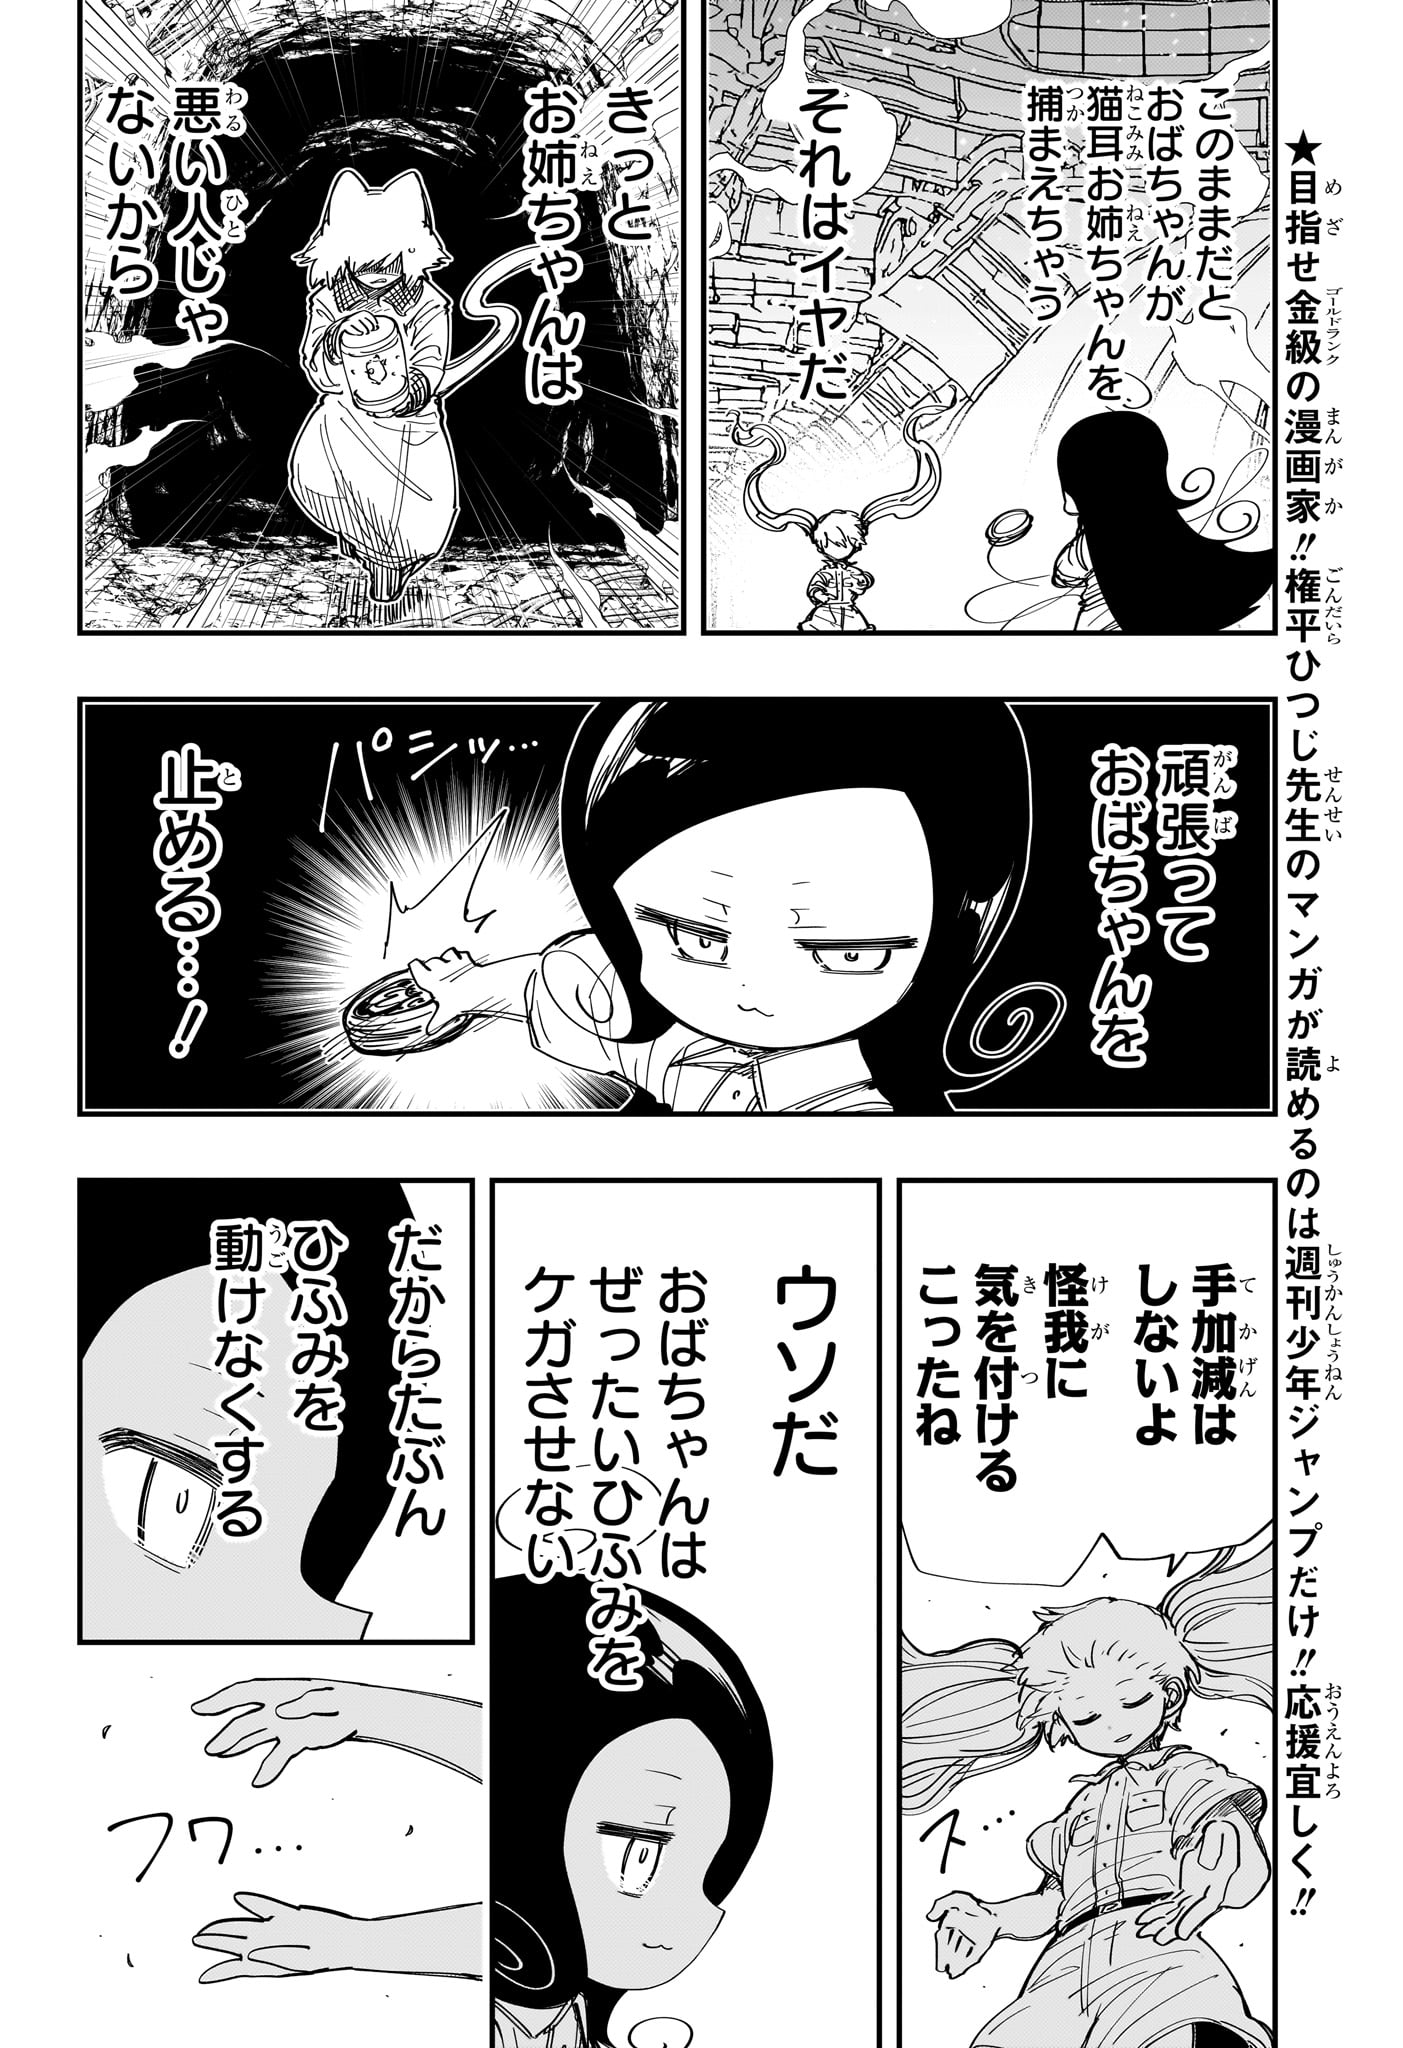 Yozakura-san Chi no Daisakusen - Chapter 212 - Page 2